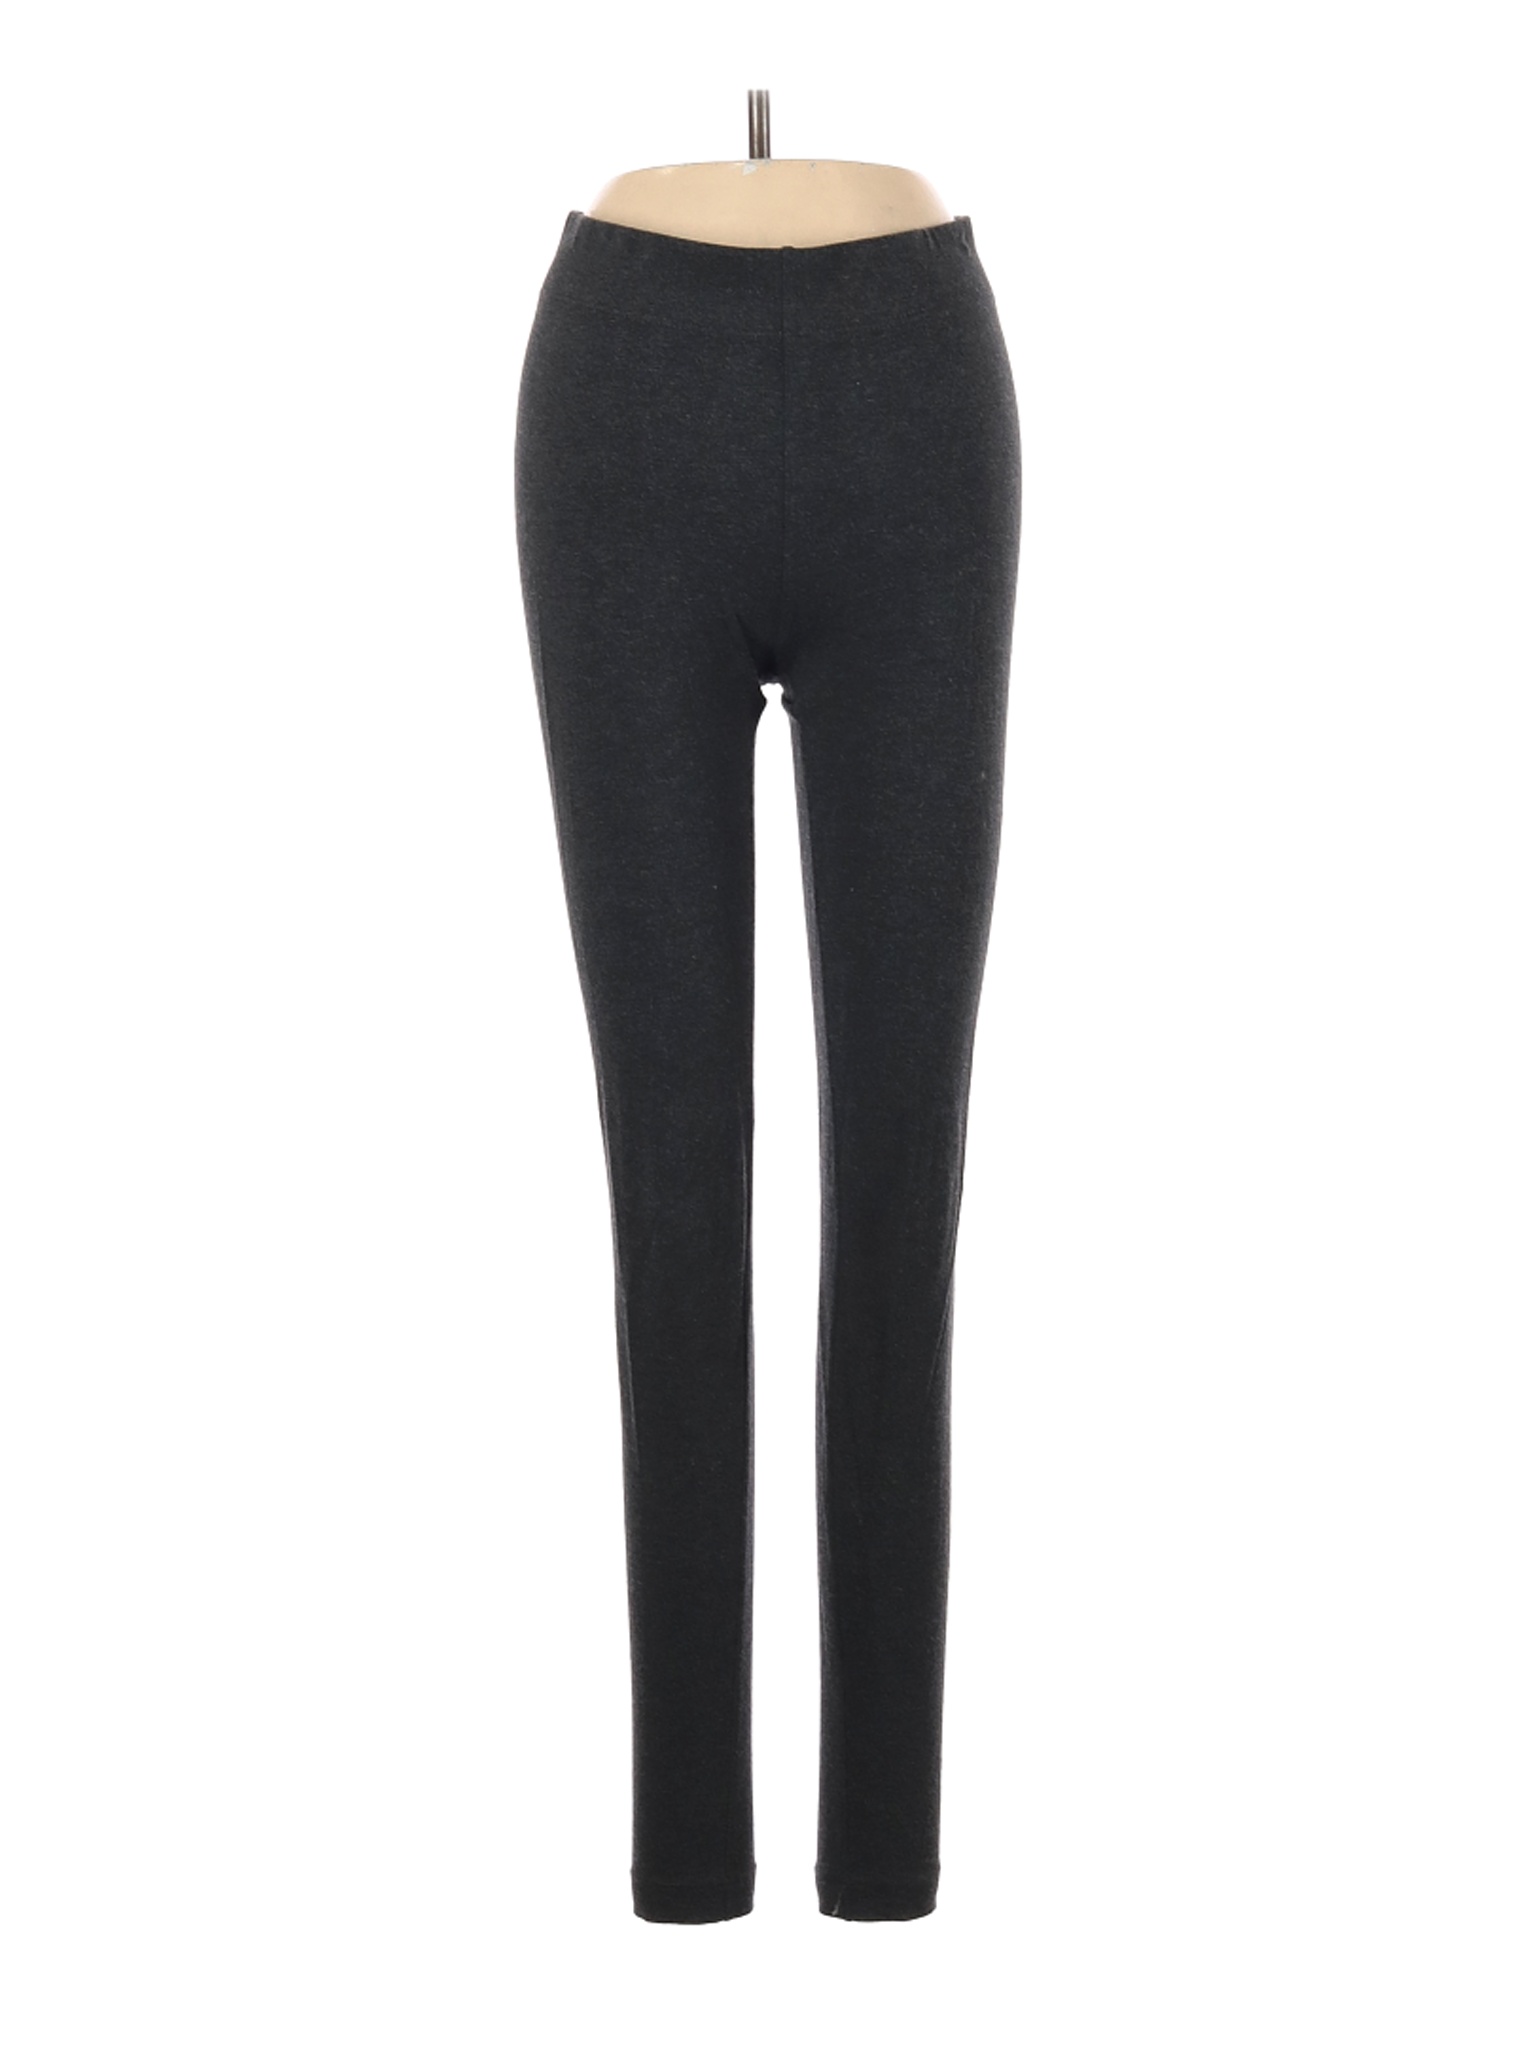 Lou & Grey Women Black Leggings XS | eBay